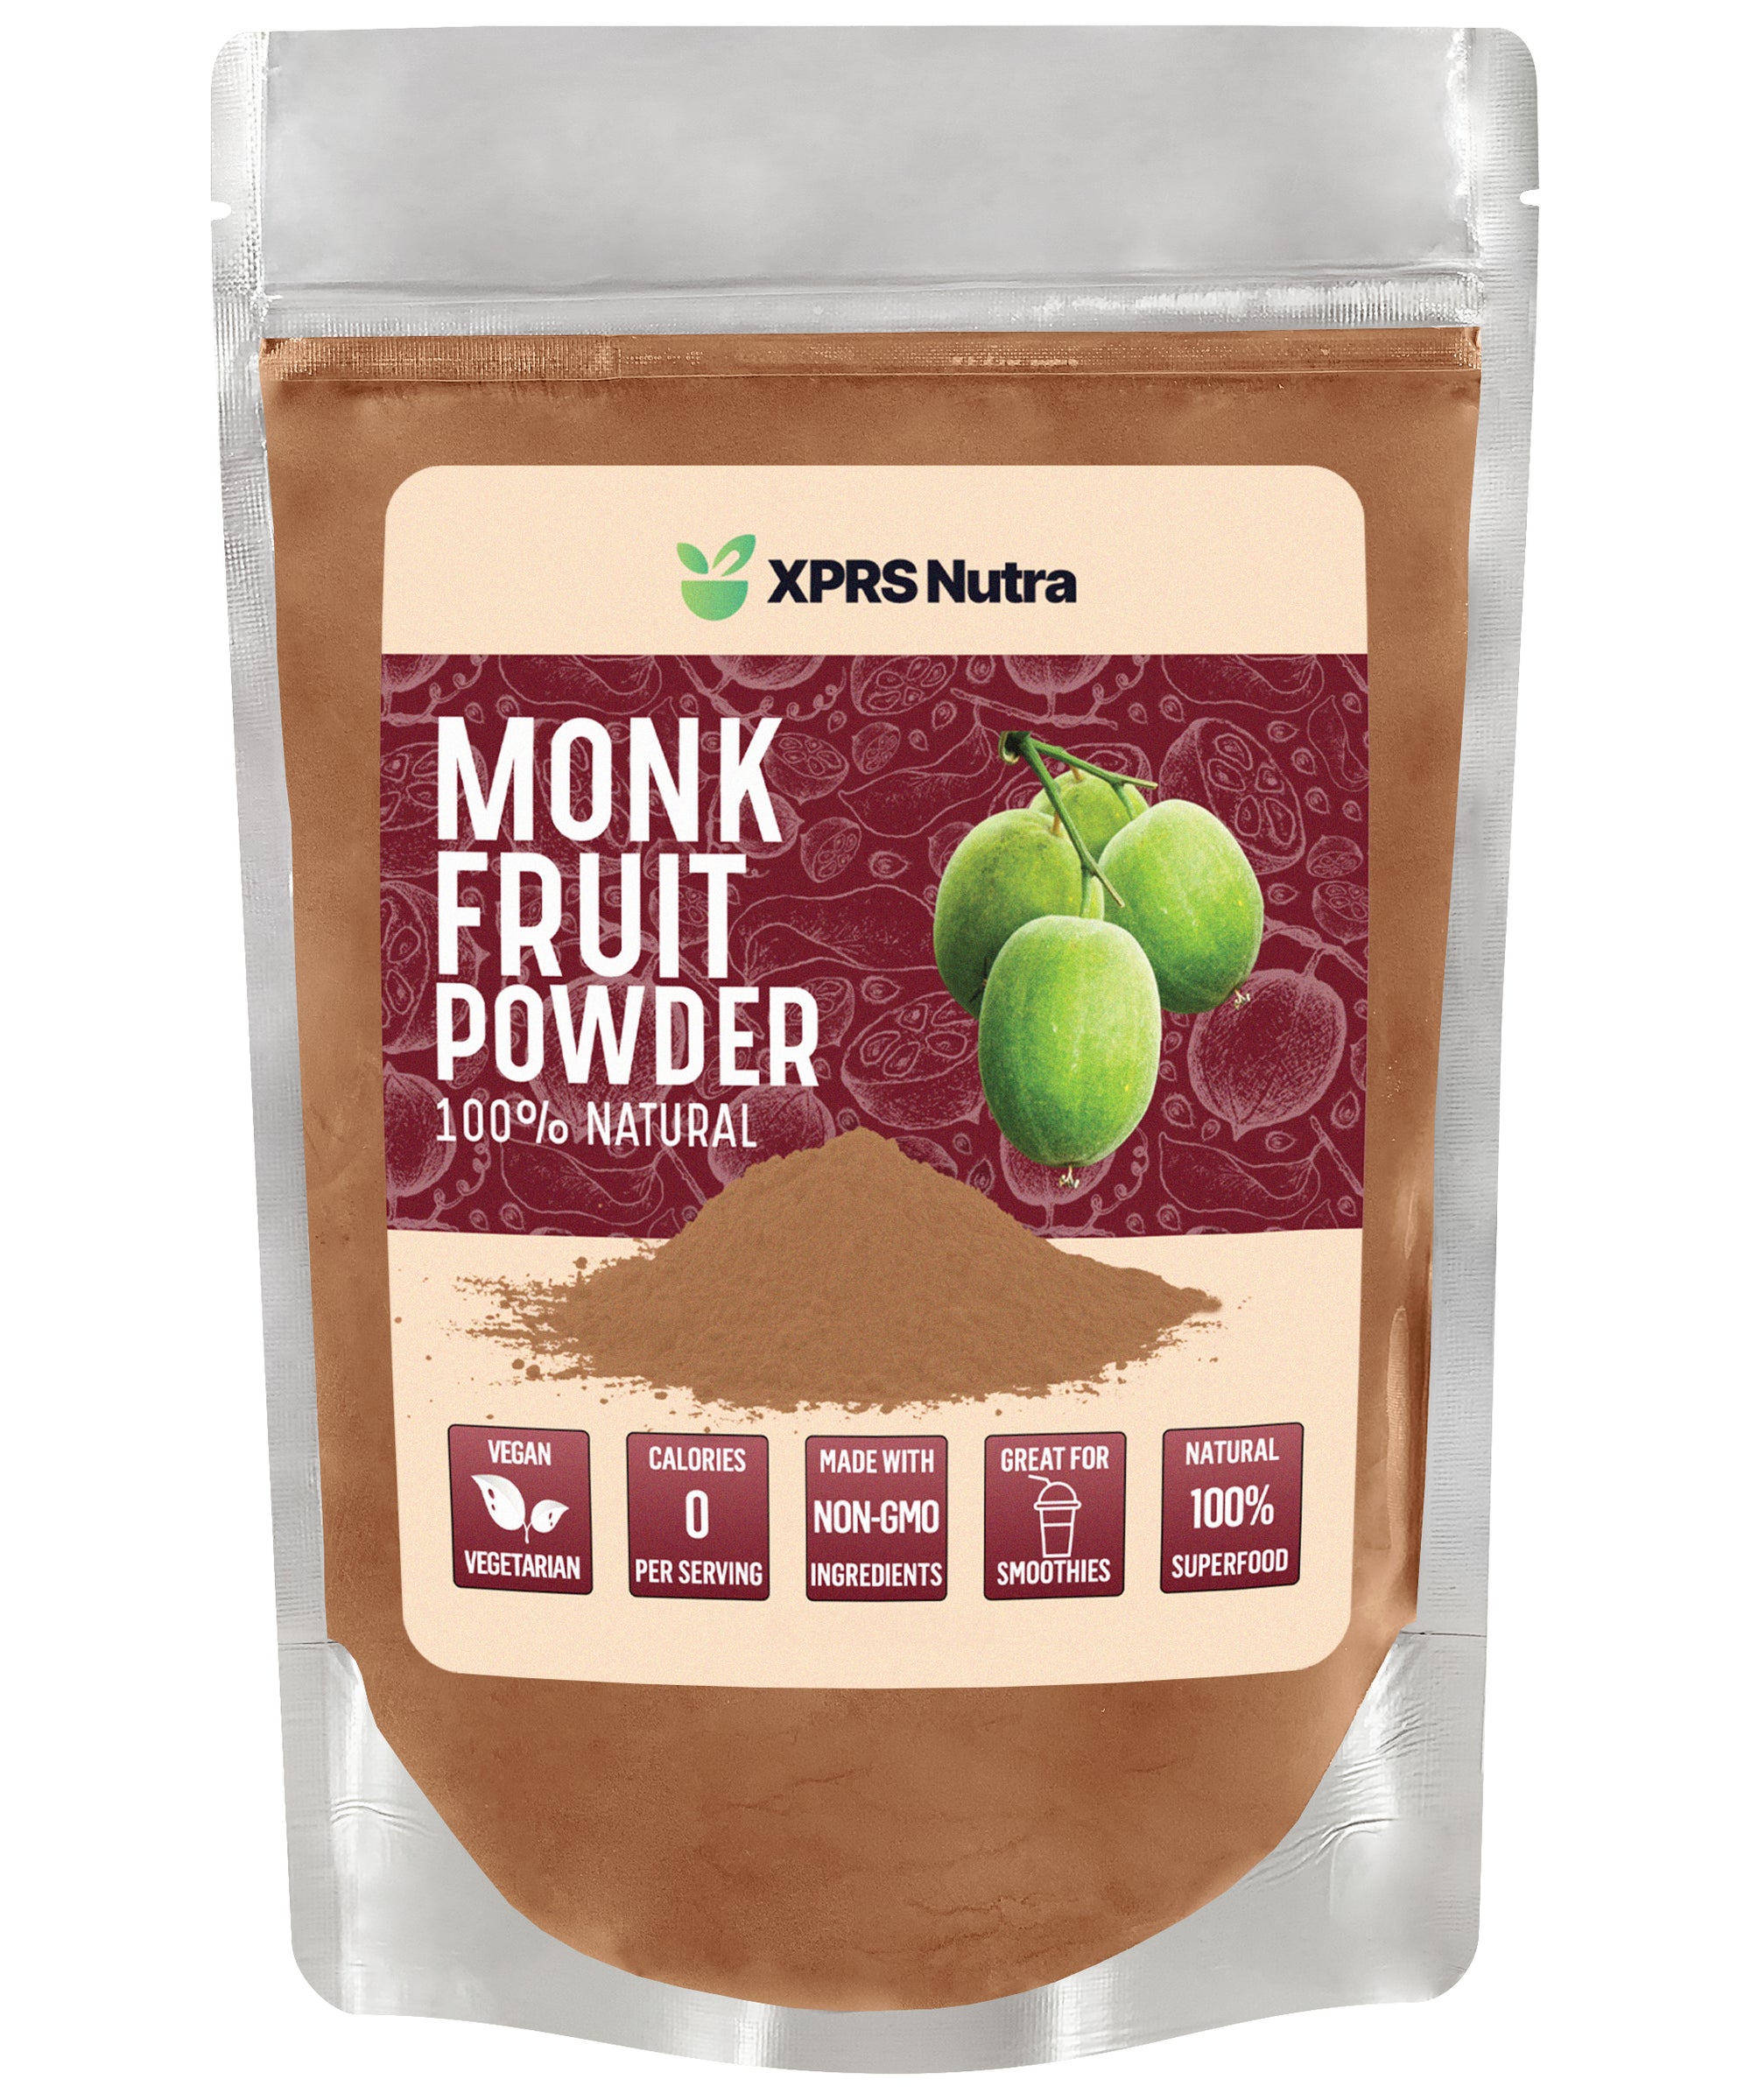 Monk Fruit Powder